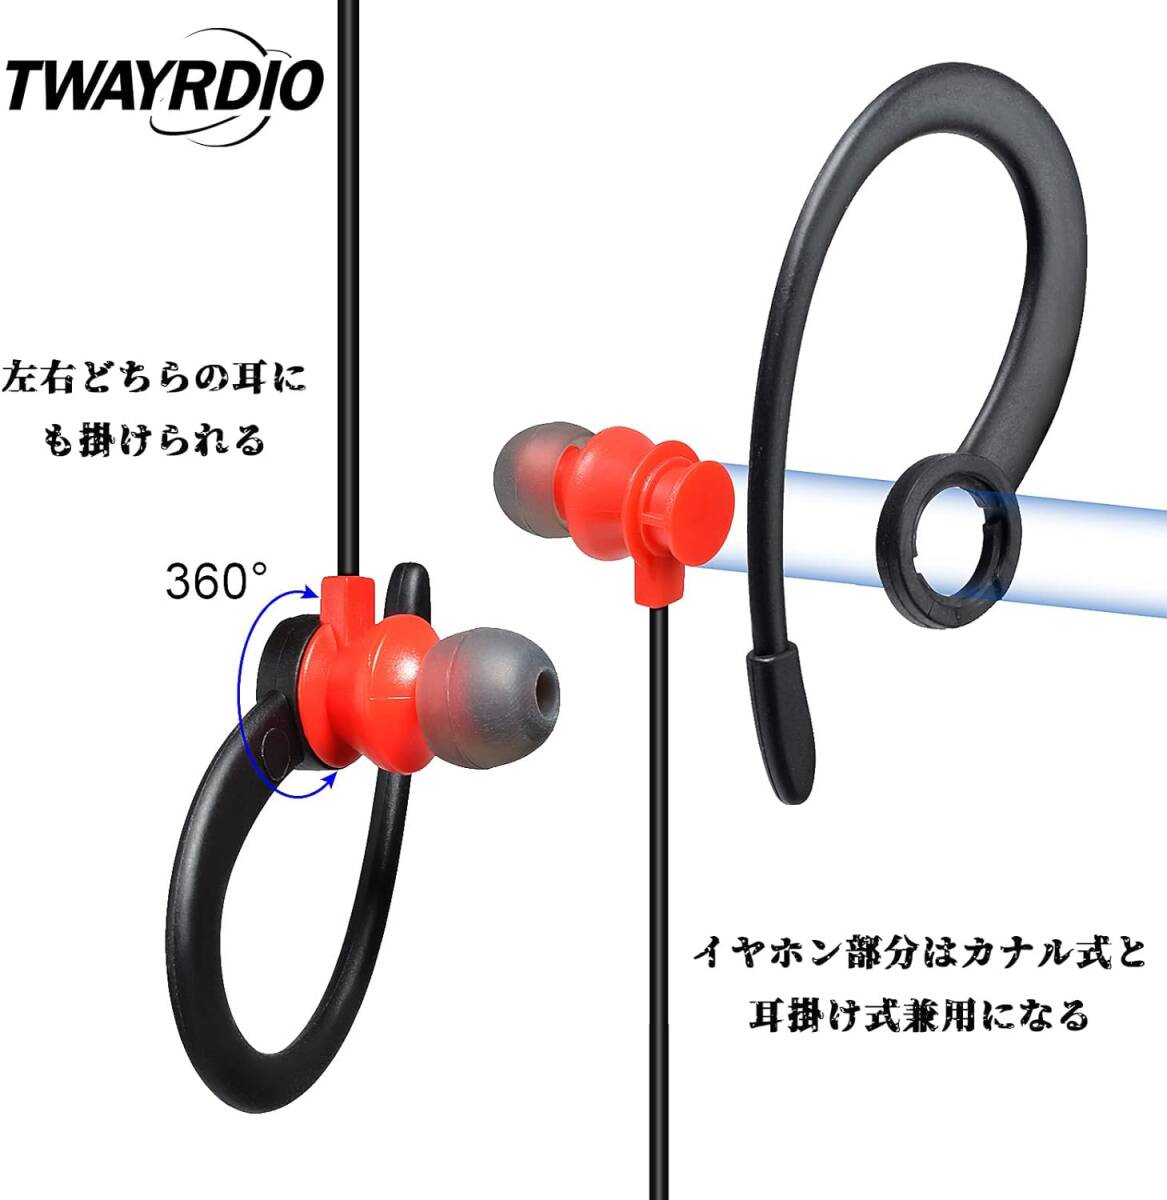 TWAYRDIO Kenwood для te Mythos для in cam слуховай аппарат особый маленький электроэнергия приемопередатчик для микрофон для наушников 2WAY kana ru тип уголок 